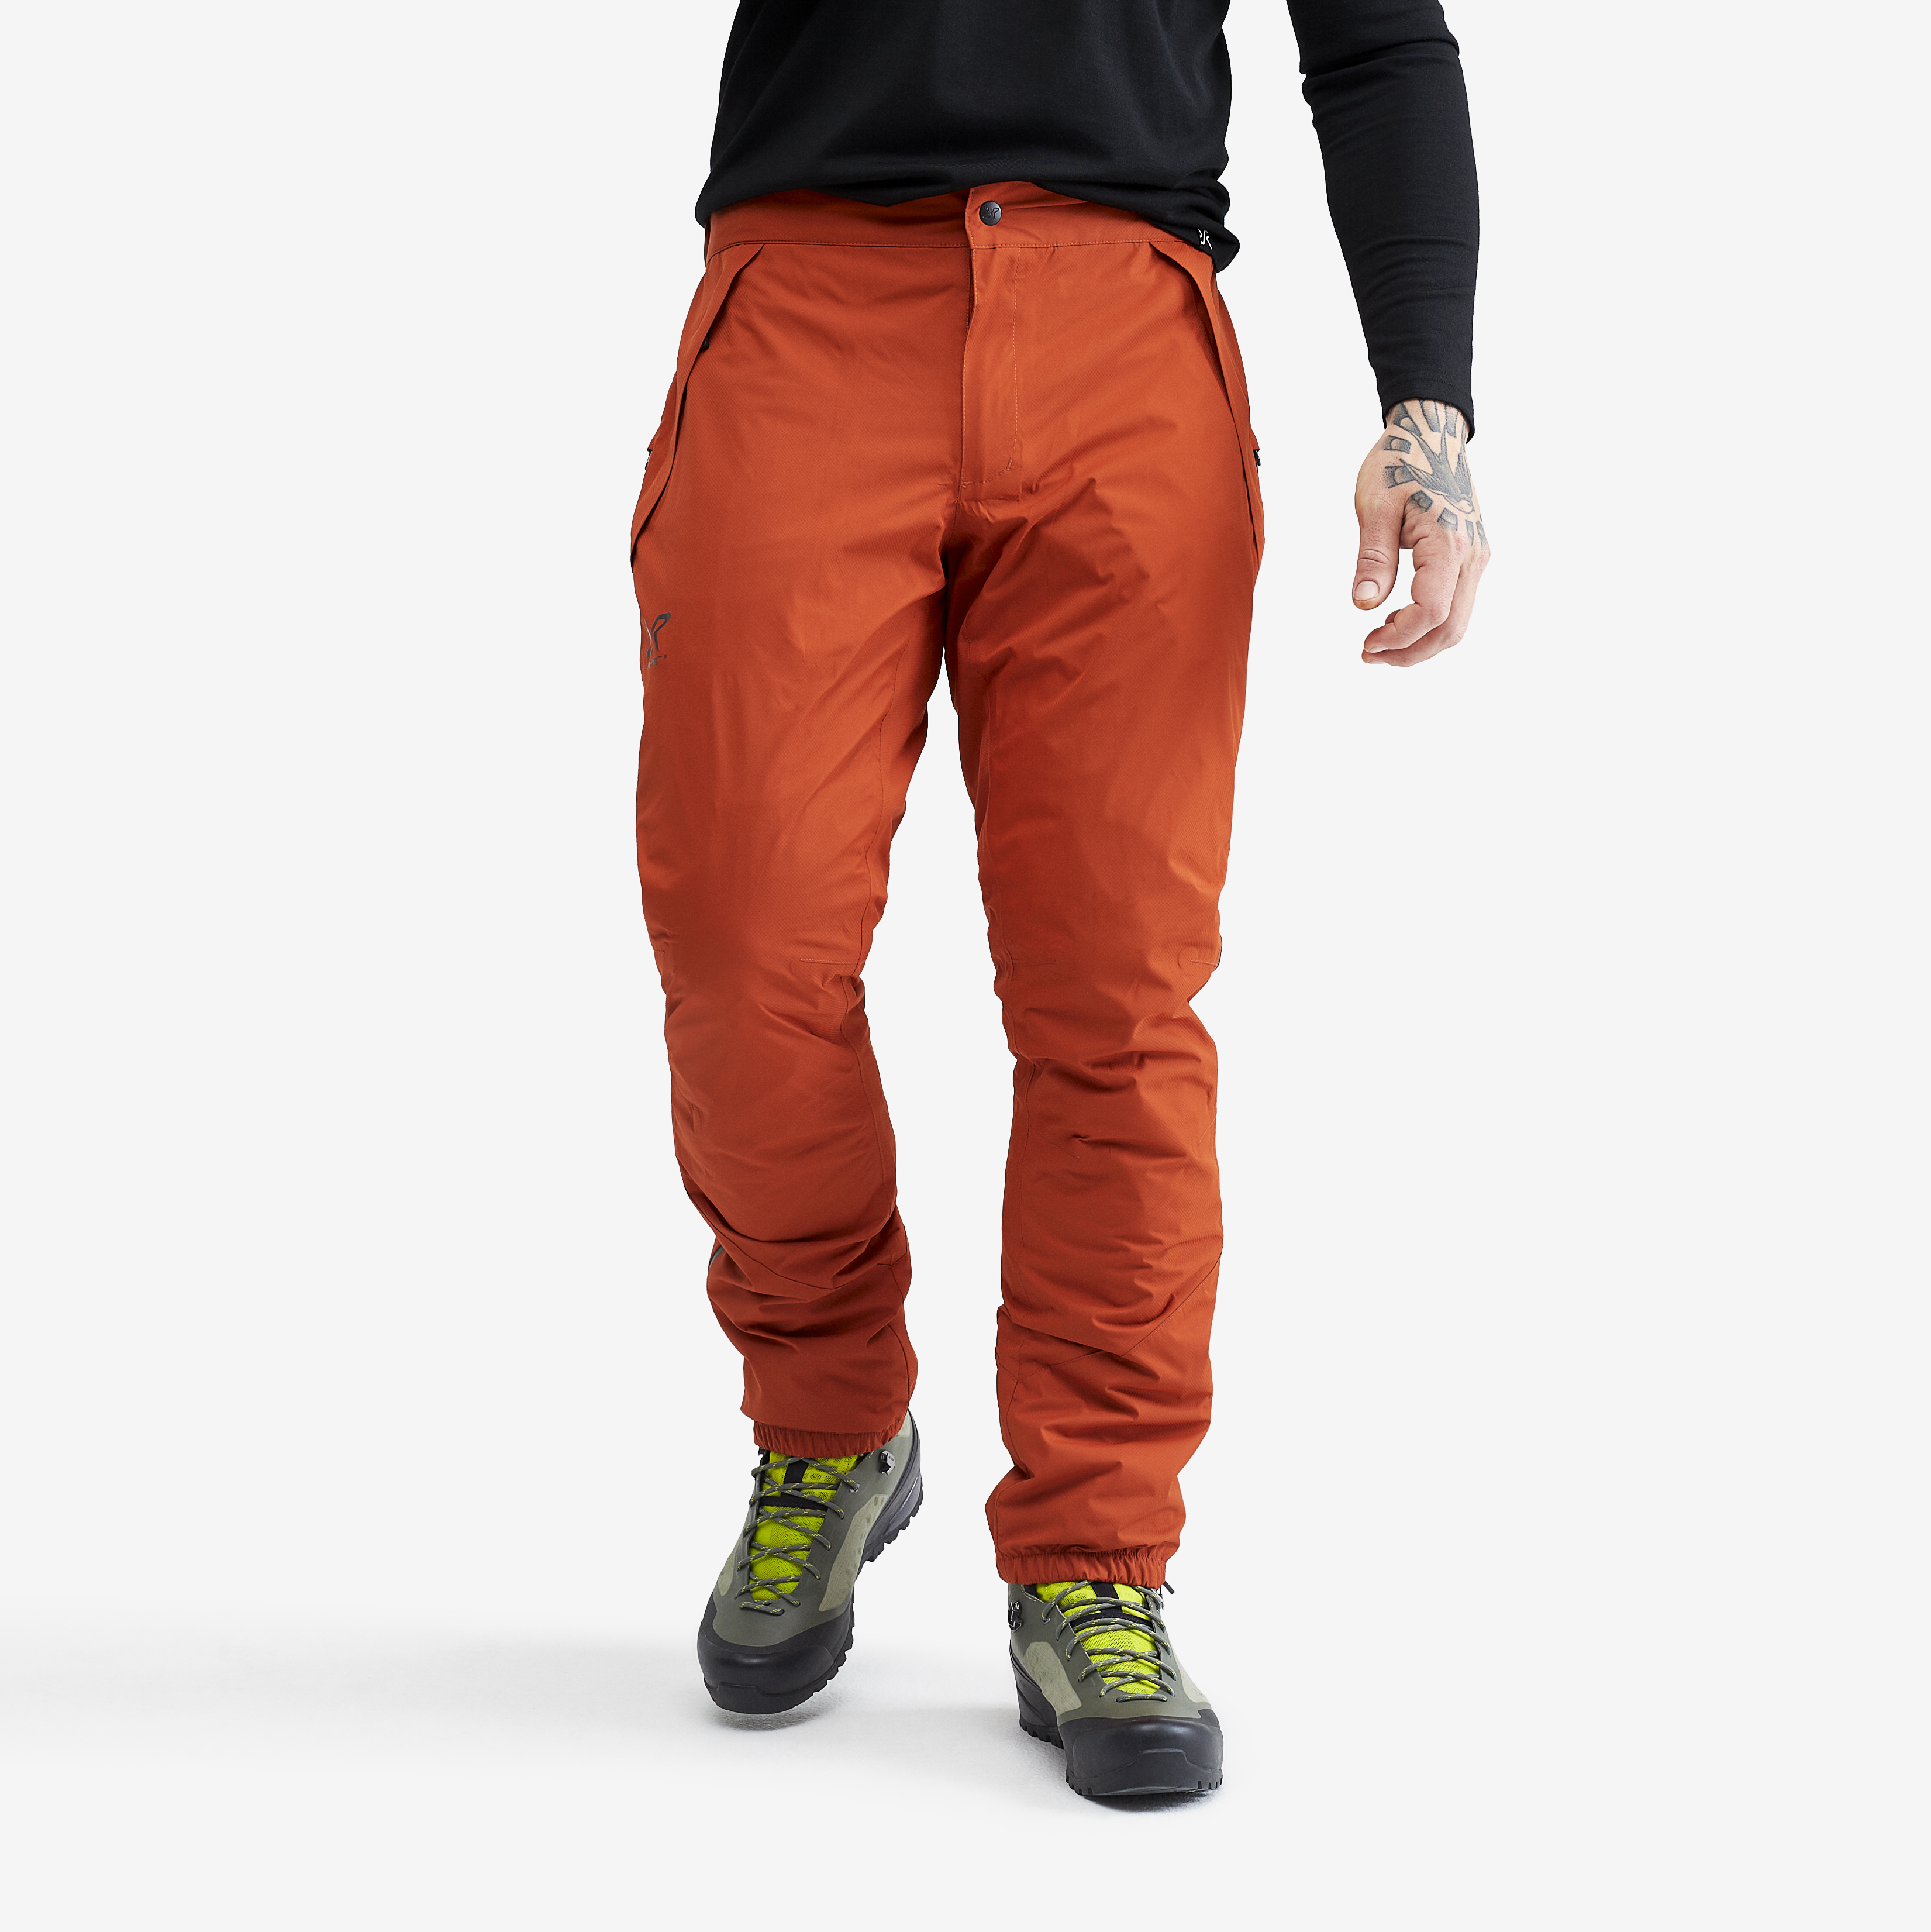 Typhoon rain pants for men in orange